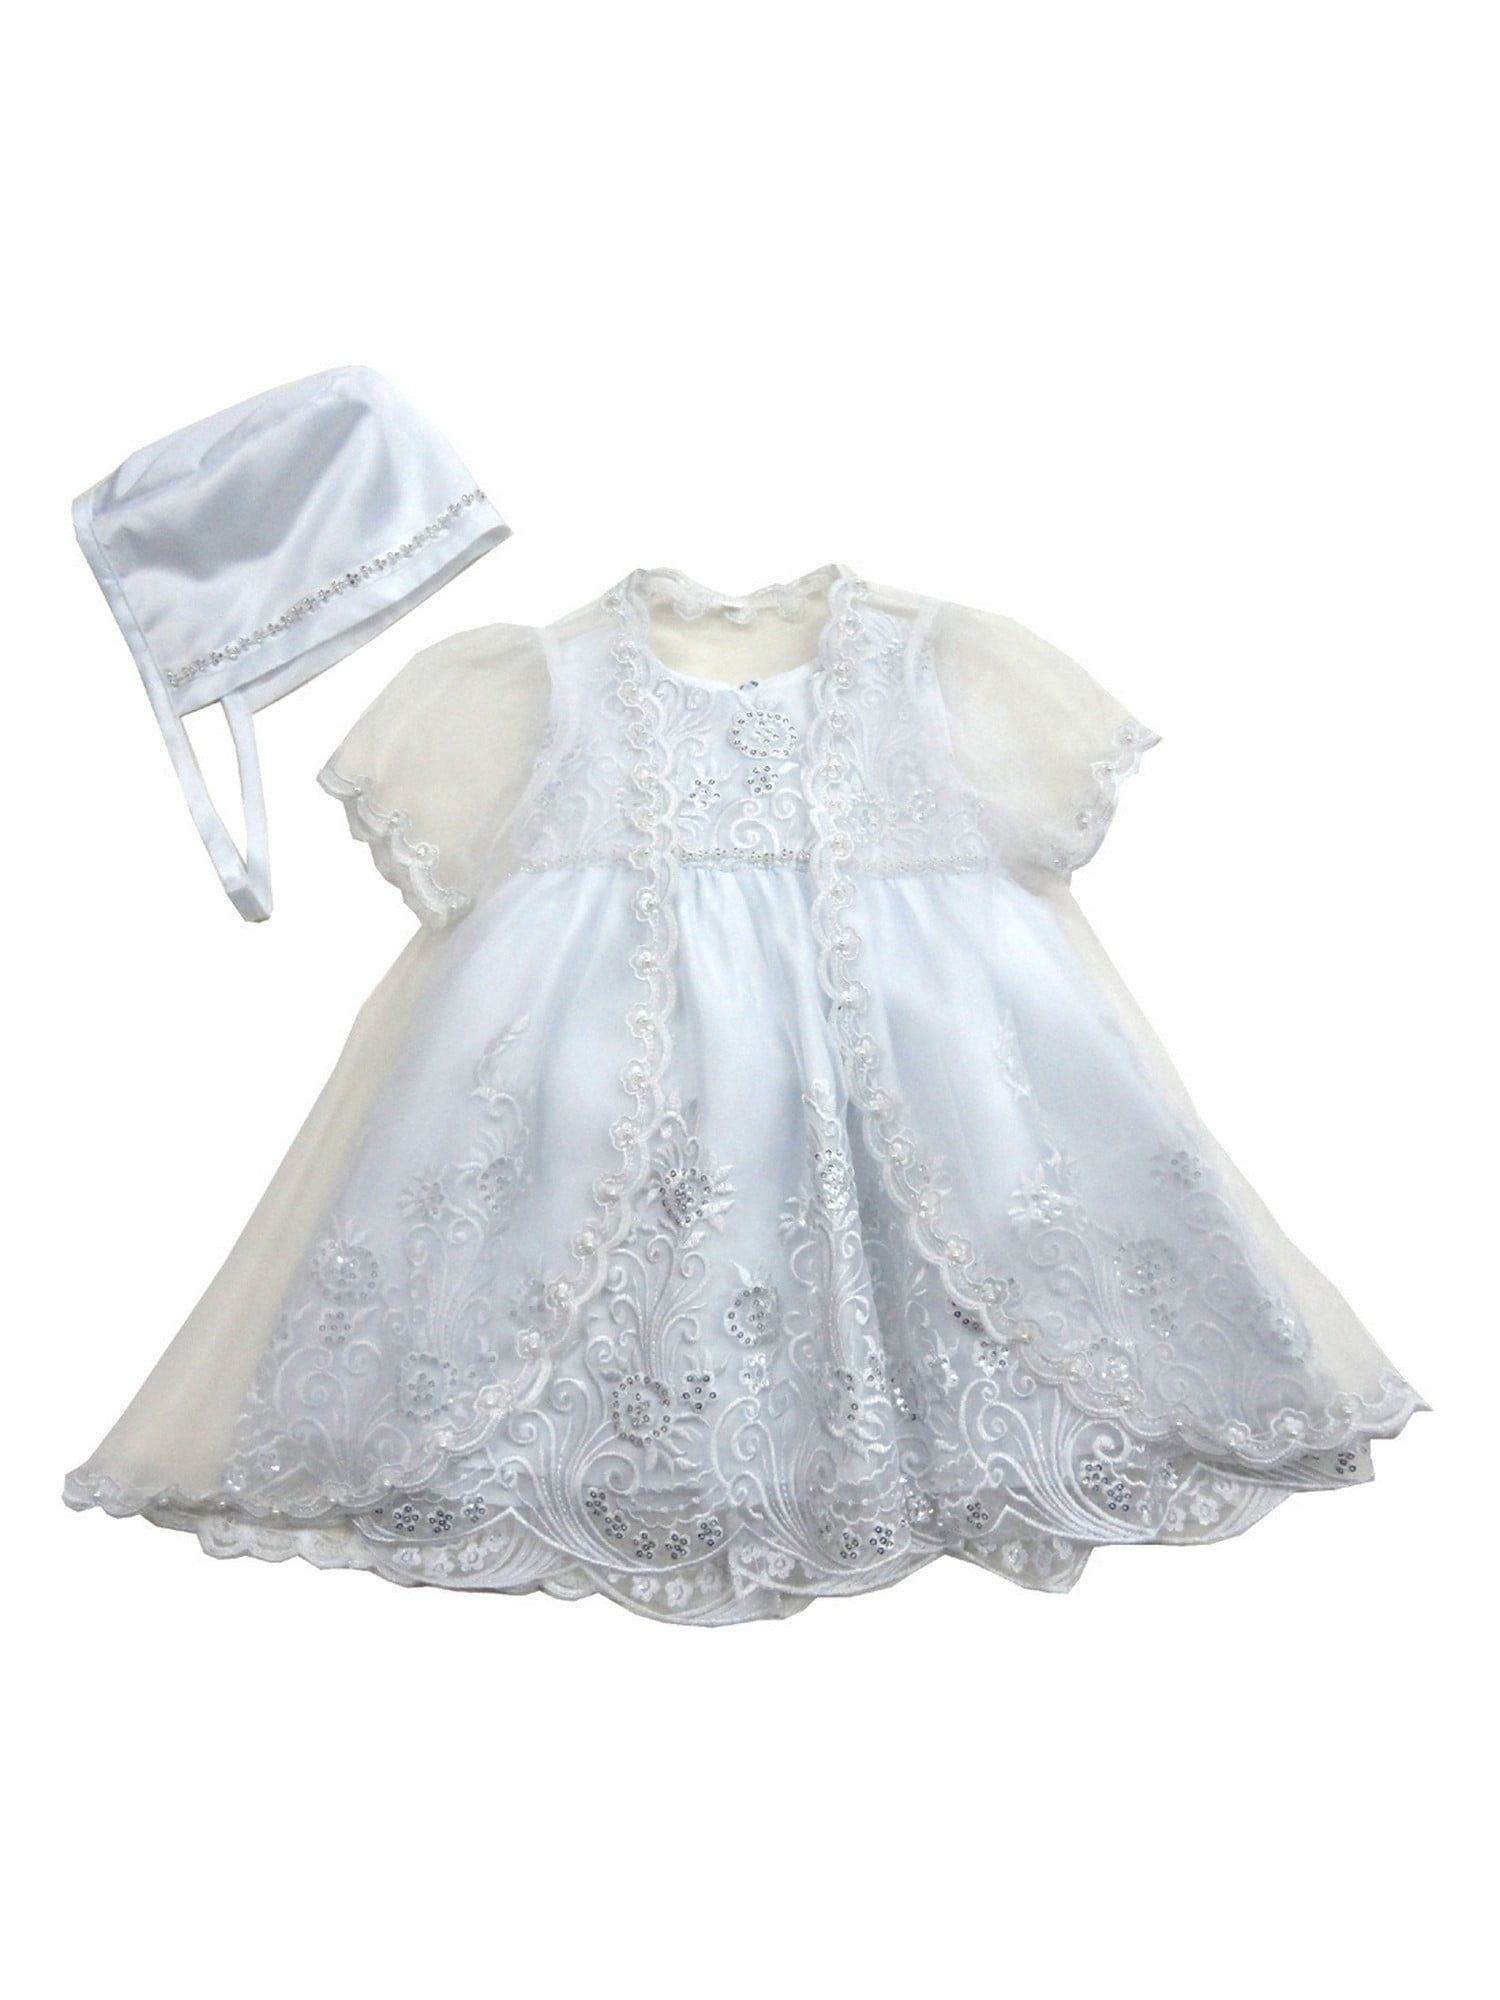 white elegance baptism dresses